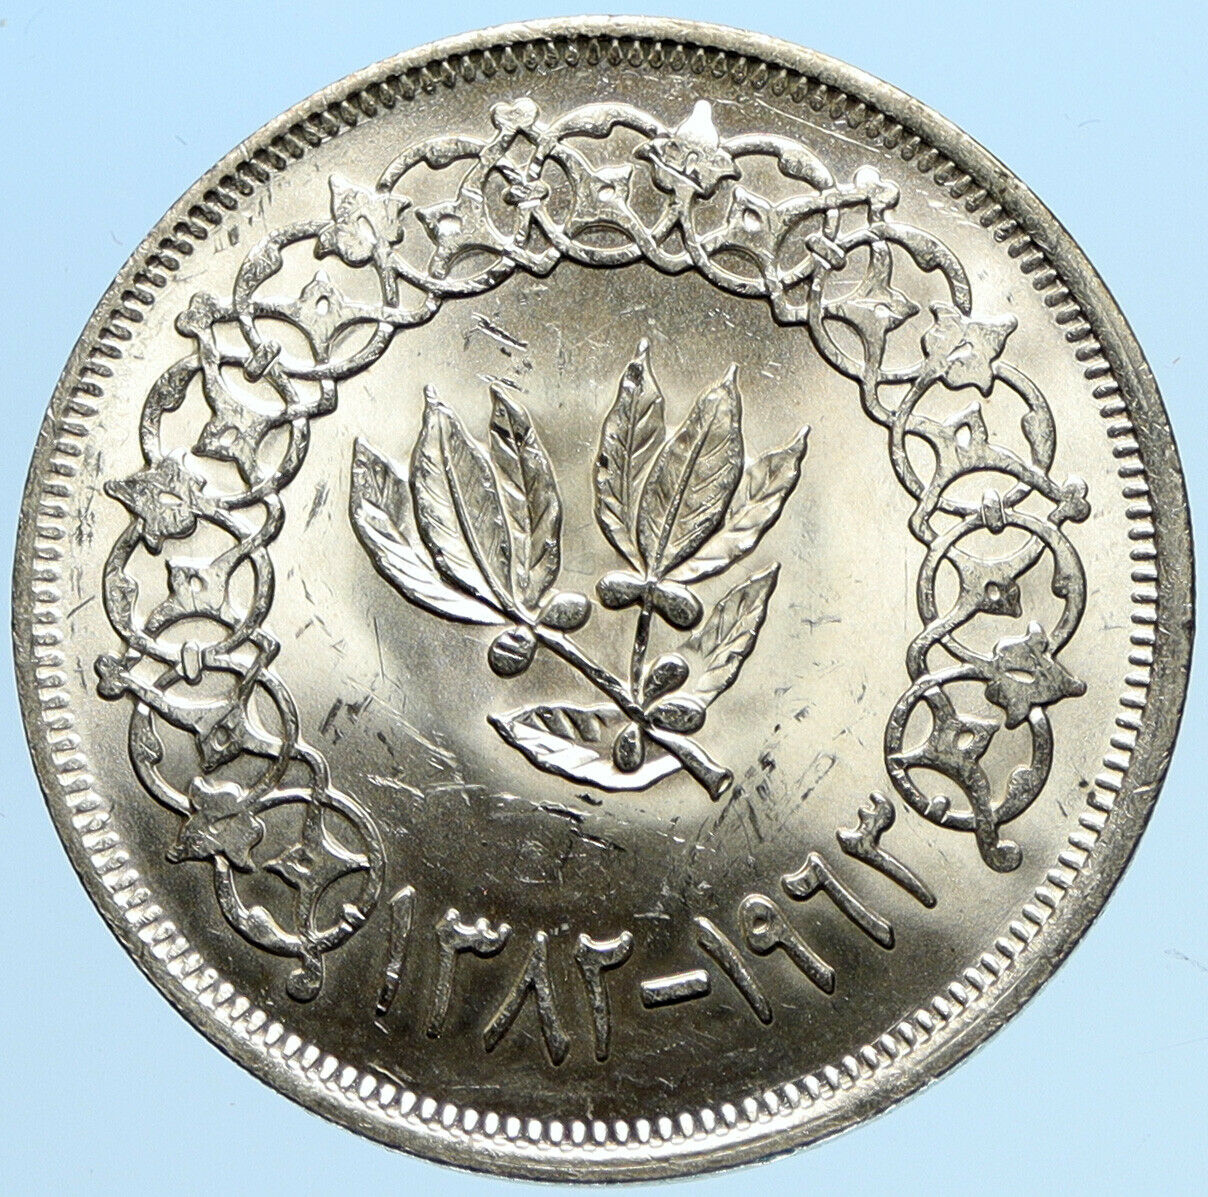 1963 1382 AH YEMEN Arab Republic Leafy Branch Genuine Silver Riyal Coin i97689